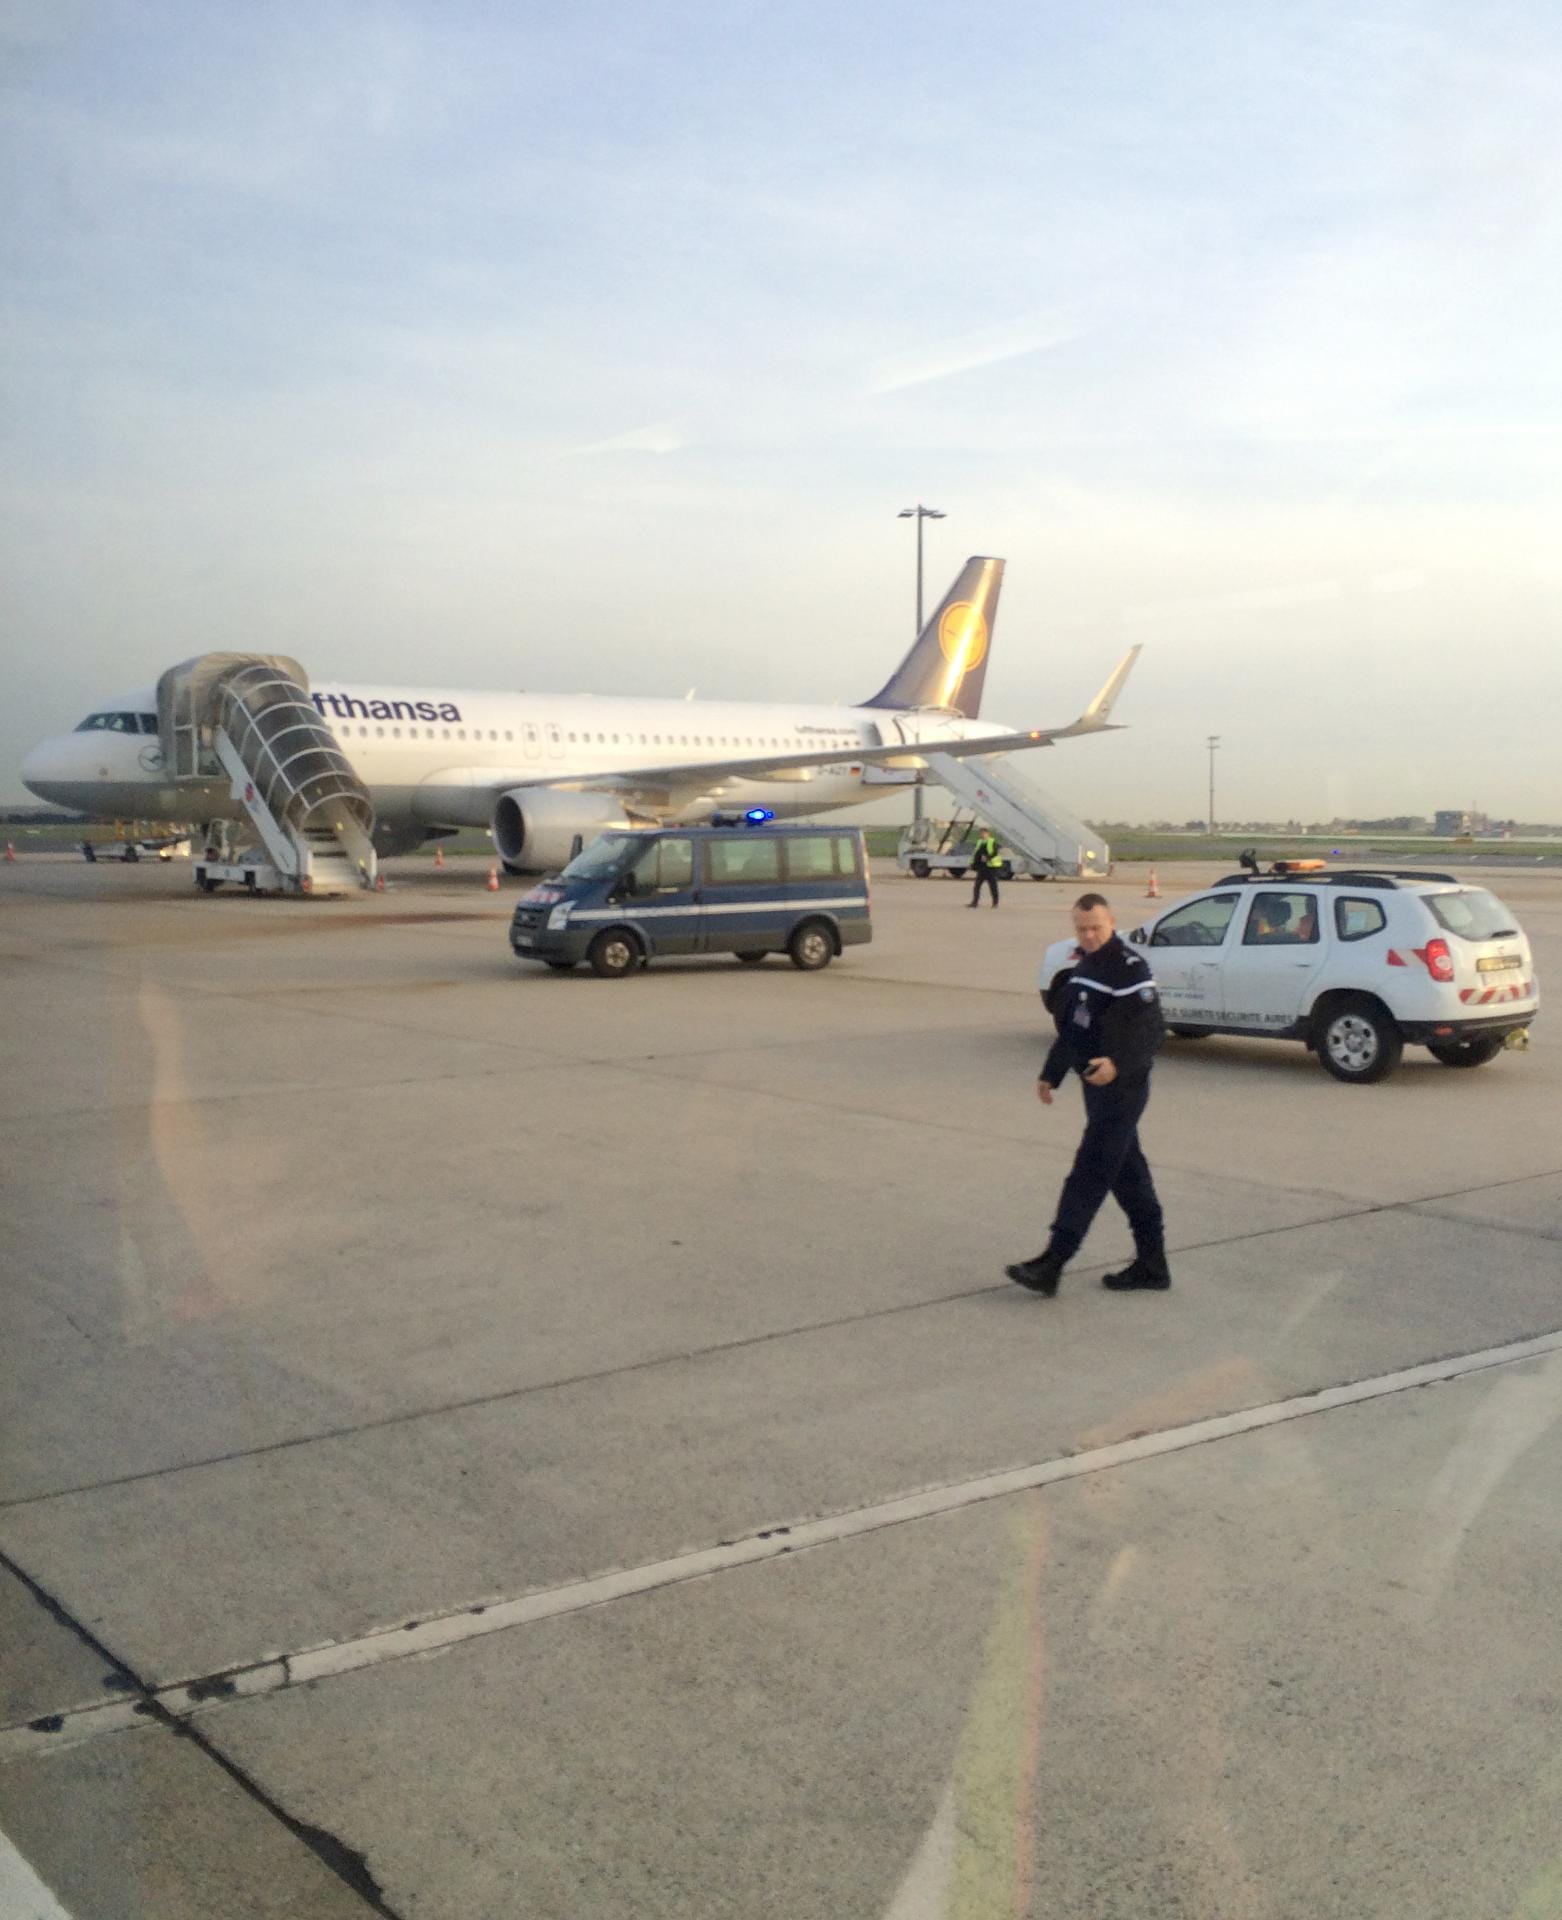 Ein Wagen der Gendarmerie auf dem Rollfeld vor einer Maschine der Lufthansa. Mit dieser Maschine flog die Deutsche Nationalmannschaft zurück nach Frankfurt.